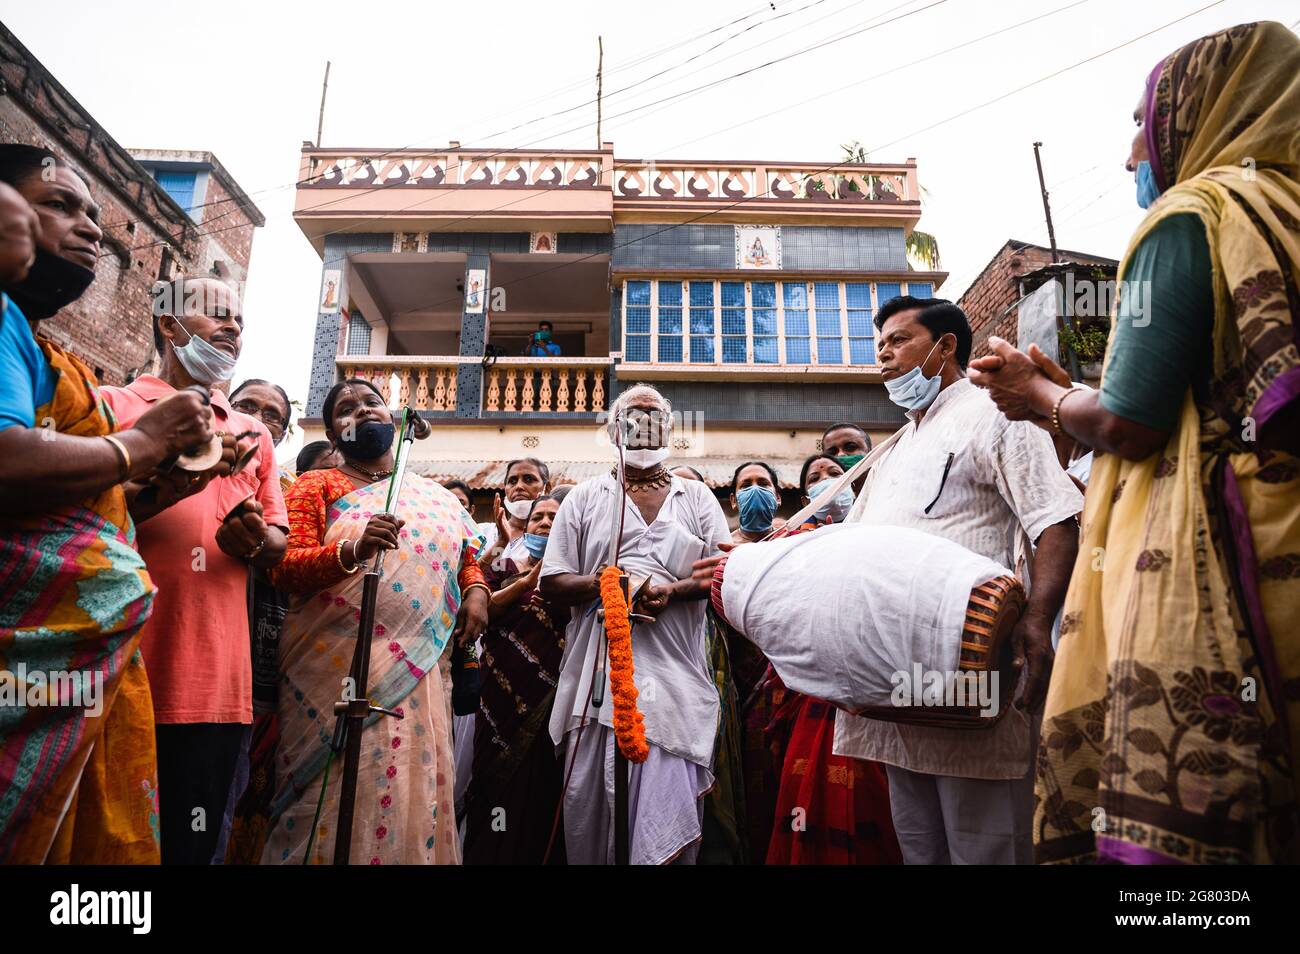 La festa di Ratha Yatra è stata celebrata all'interno del tempio di Tehatta, in conformità con le norme amministrative per le precauzioni contro il coronavirus. Non è stato permesso loro di entrare senza maschere. Un'organizzazione volontaria ha aiutato con l'igienizzatore per i devoti. Anche se ci erano regole, alcuni bambini ed anziani non hanno indossato le maschere o non stavano indossando le maschere correttamente. Tehatta, Bengala Occidentale; India. Foto Stock